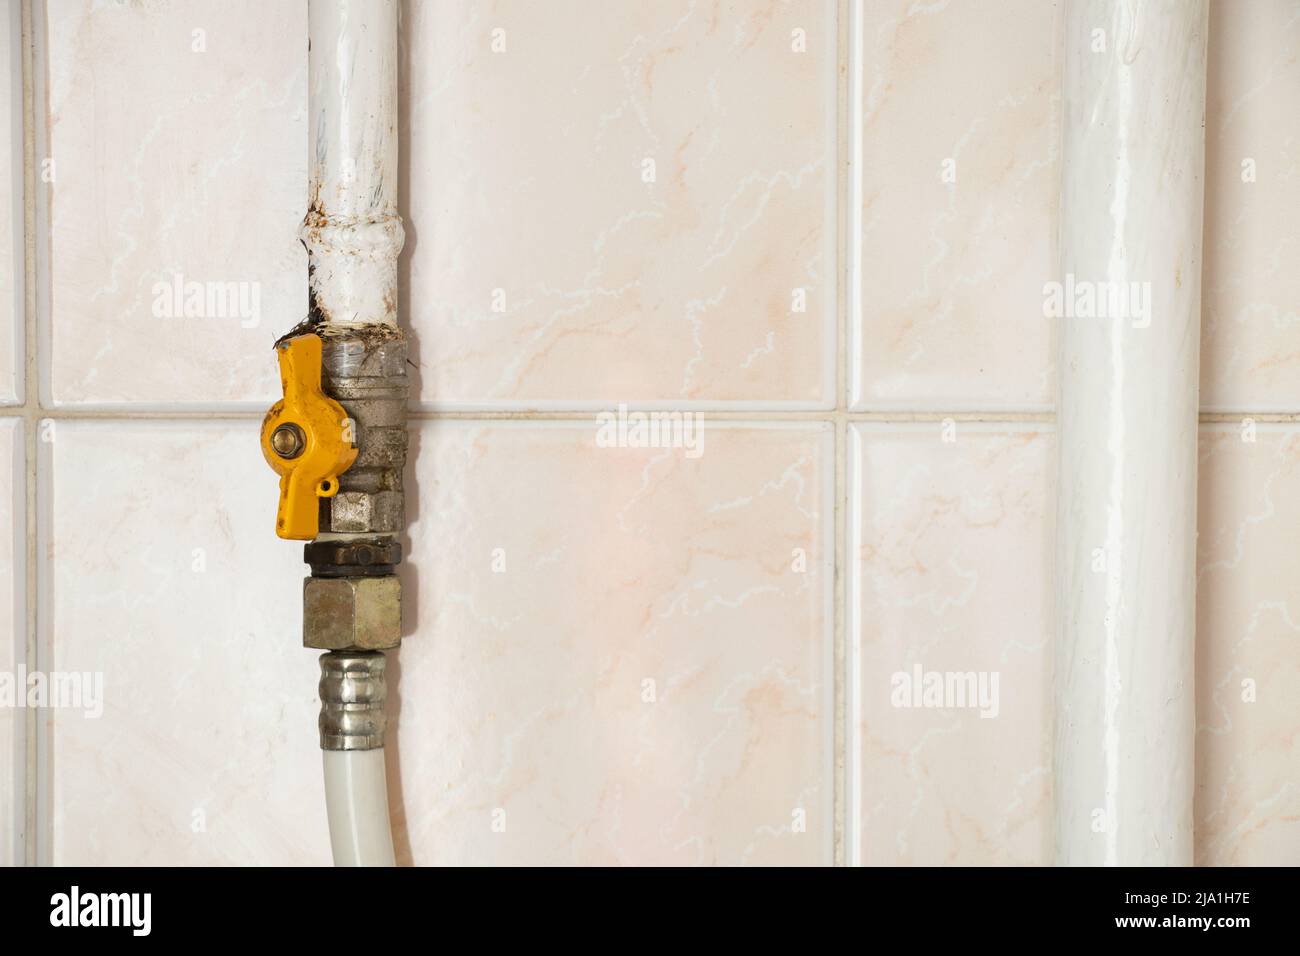 Un tuyau de gaz avec un robinet sur le fond d'une tuile à la maison dans un appartement, un robinet sur un tuyau de pâte dans la cuisine Banque D'Images